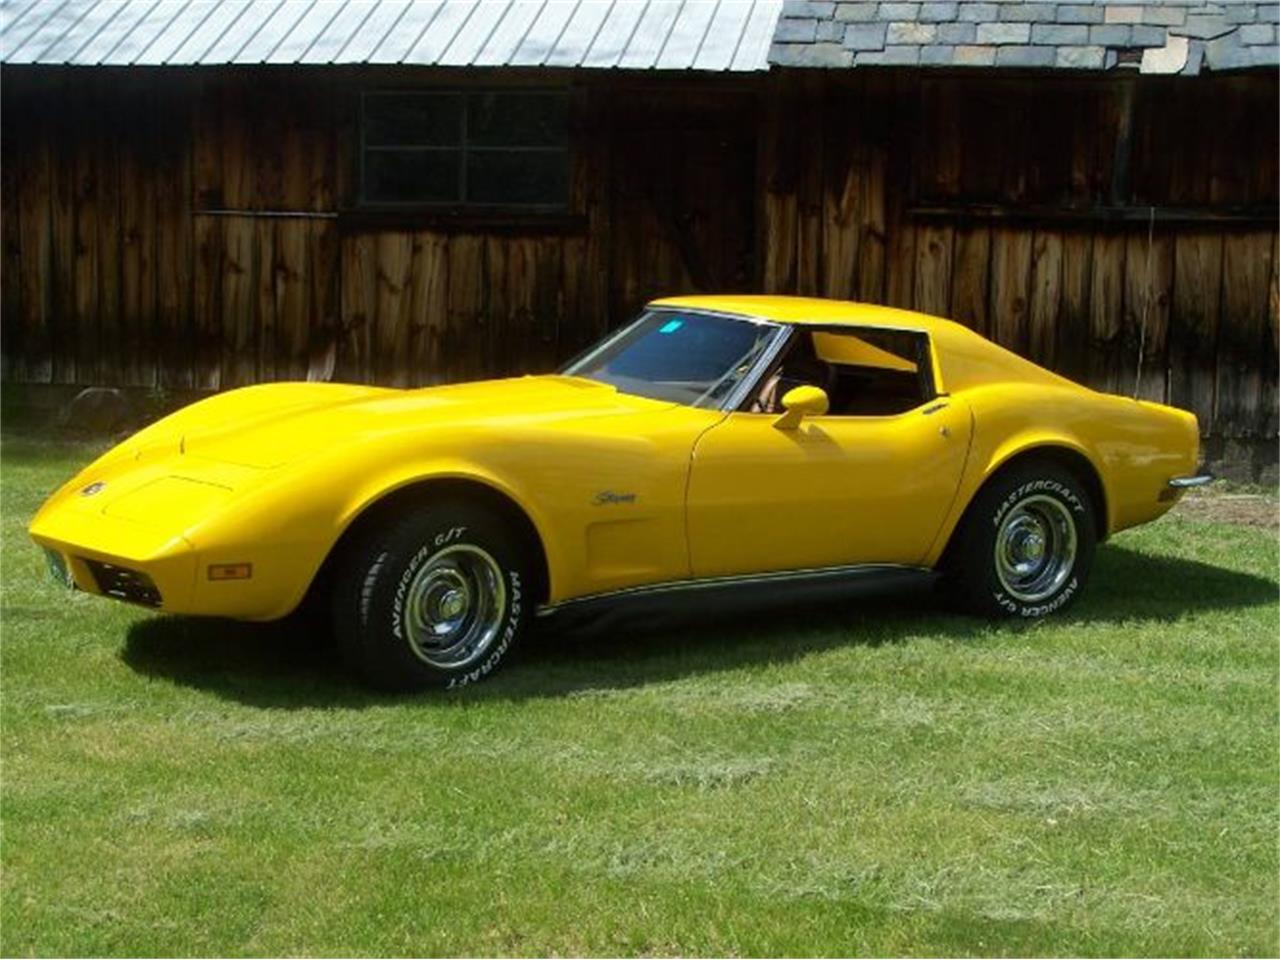 1973 Chevrolet Corvette for sale in Cadillac, MI